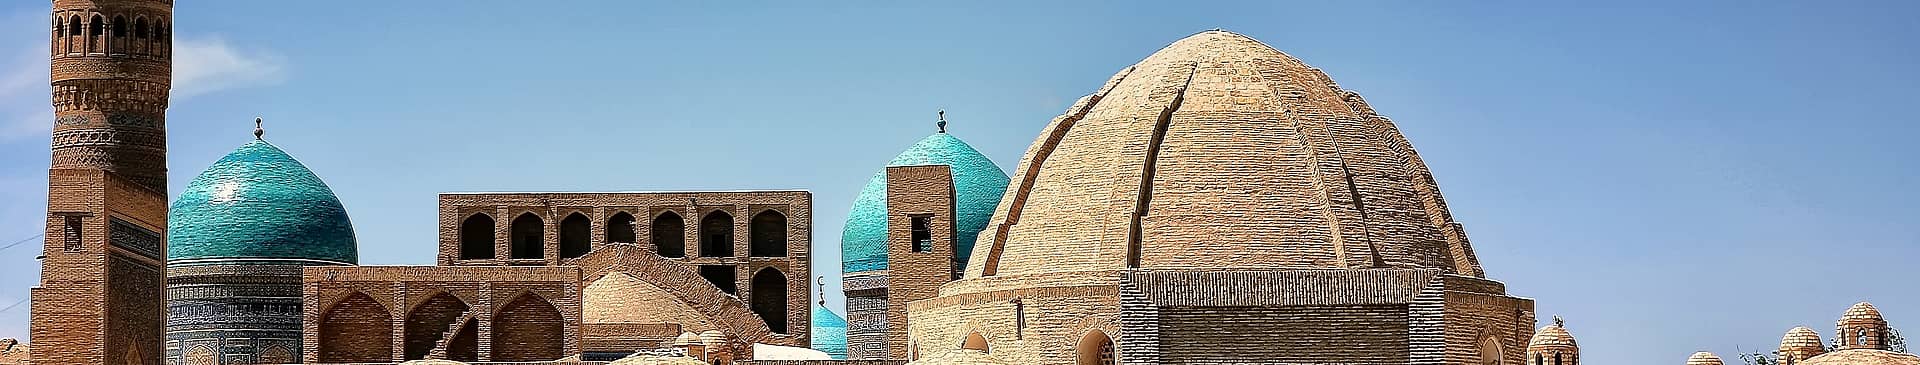 Uzbekistan in July